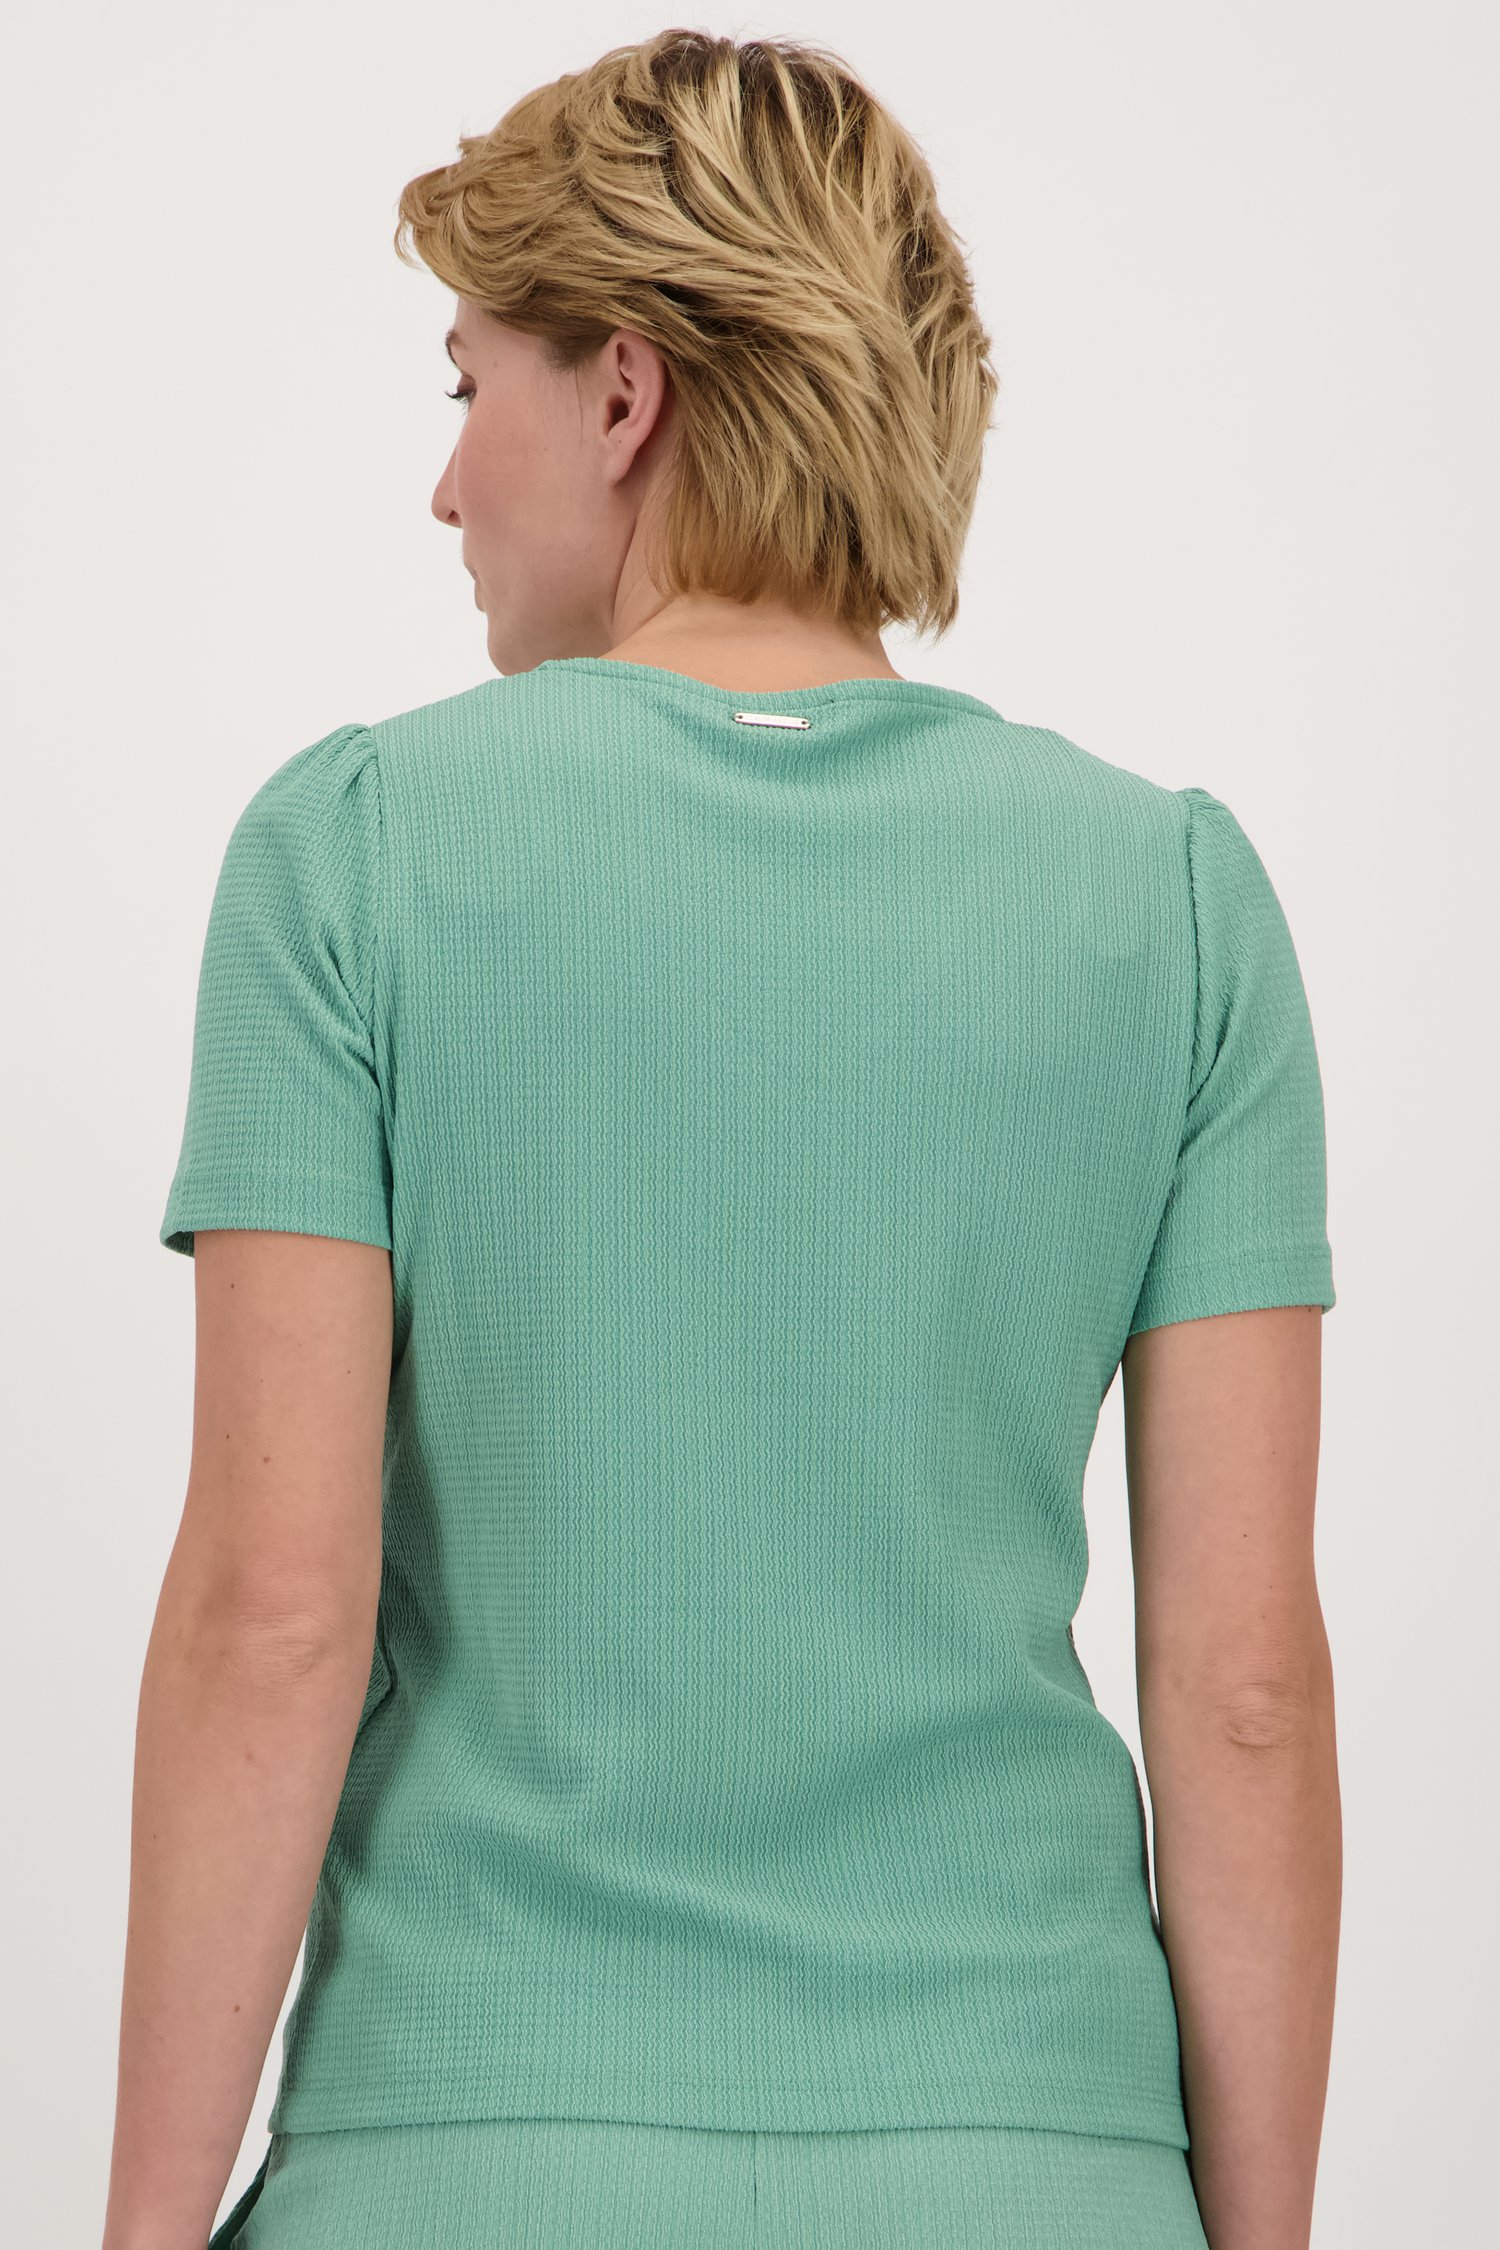 Groen T-shirt met fijne textuur van Claude Arielle voor Dames